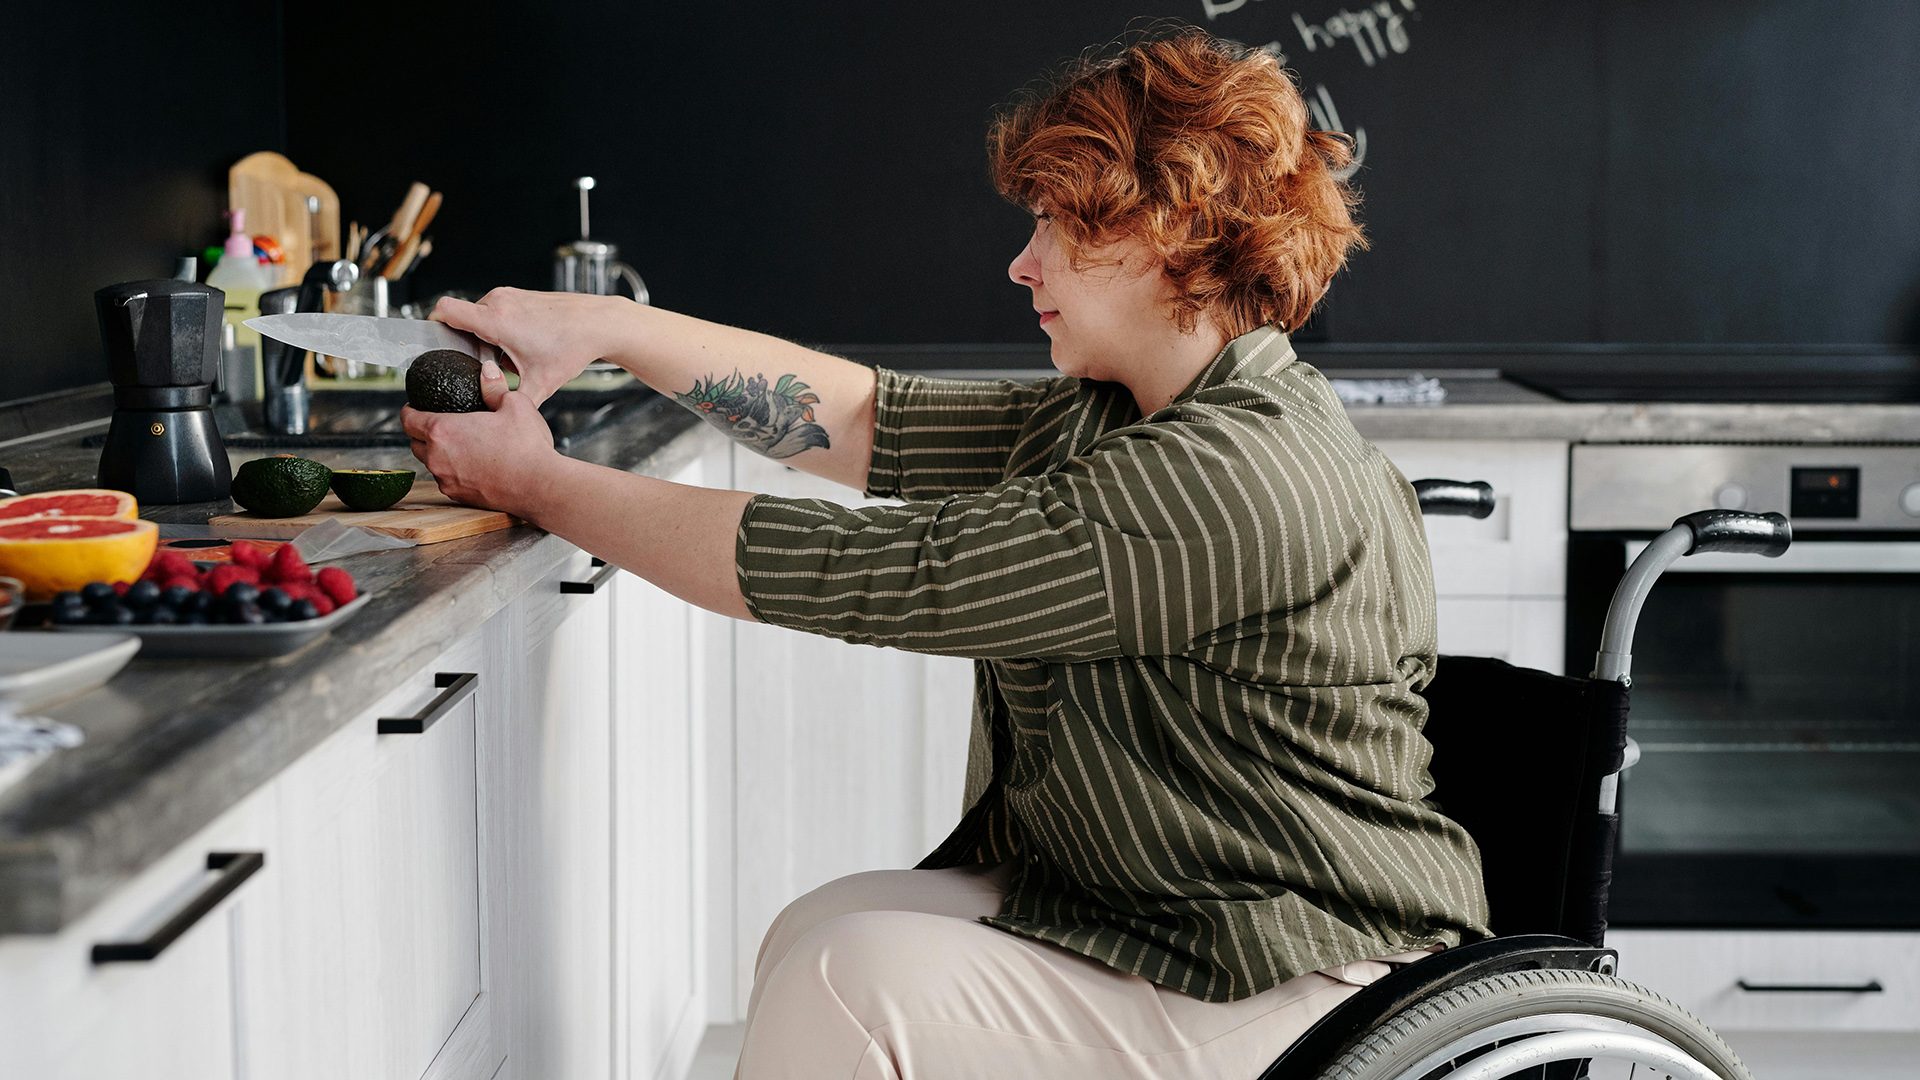 A woman in a wheelchair preparing food